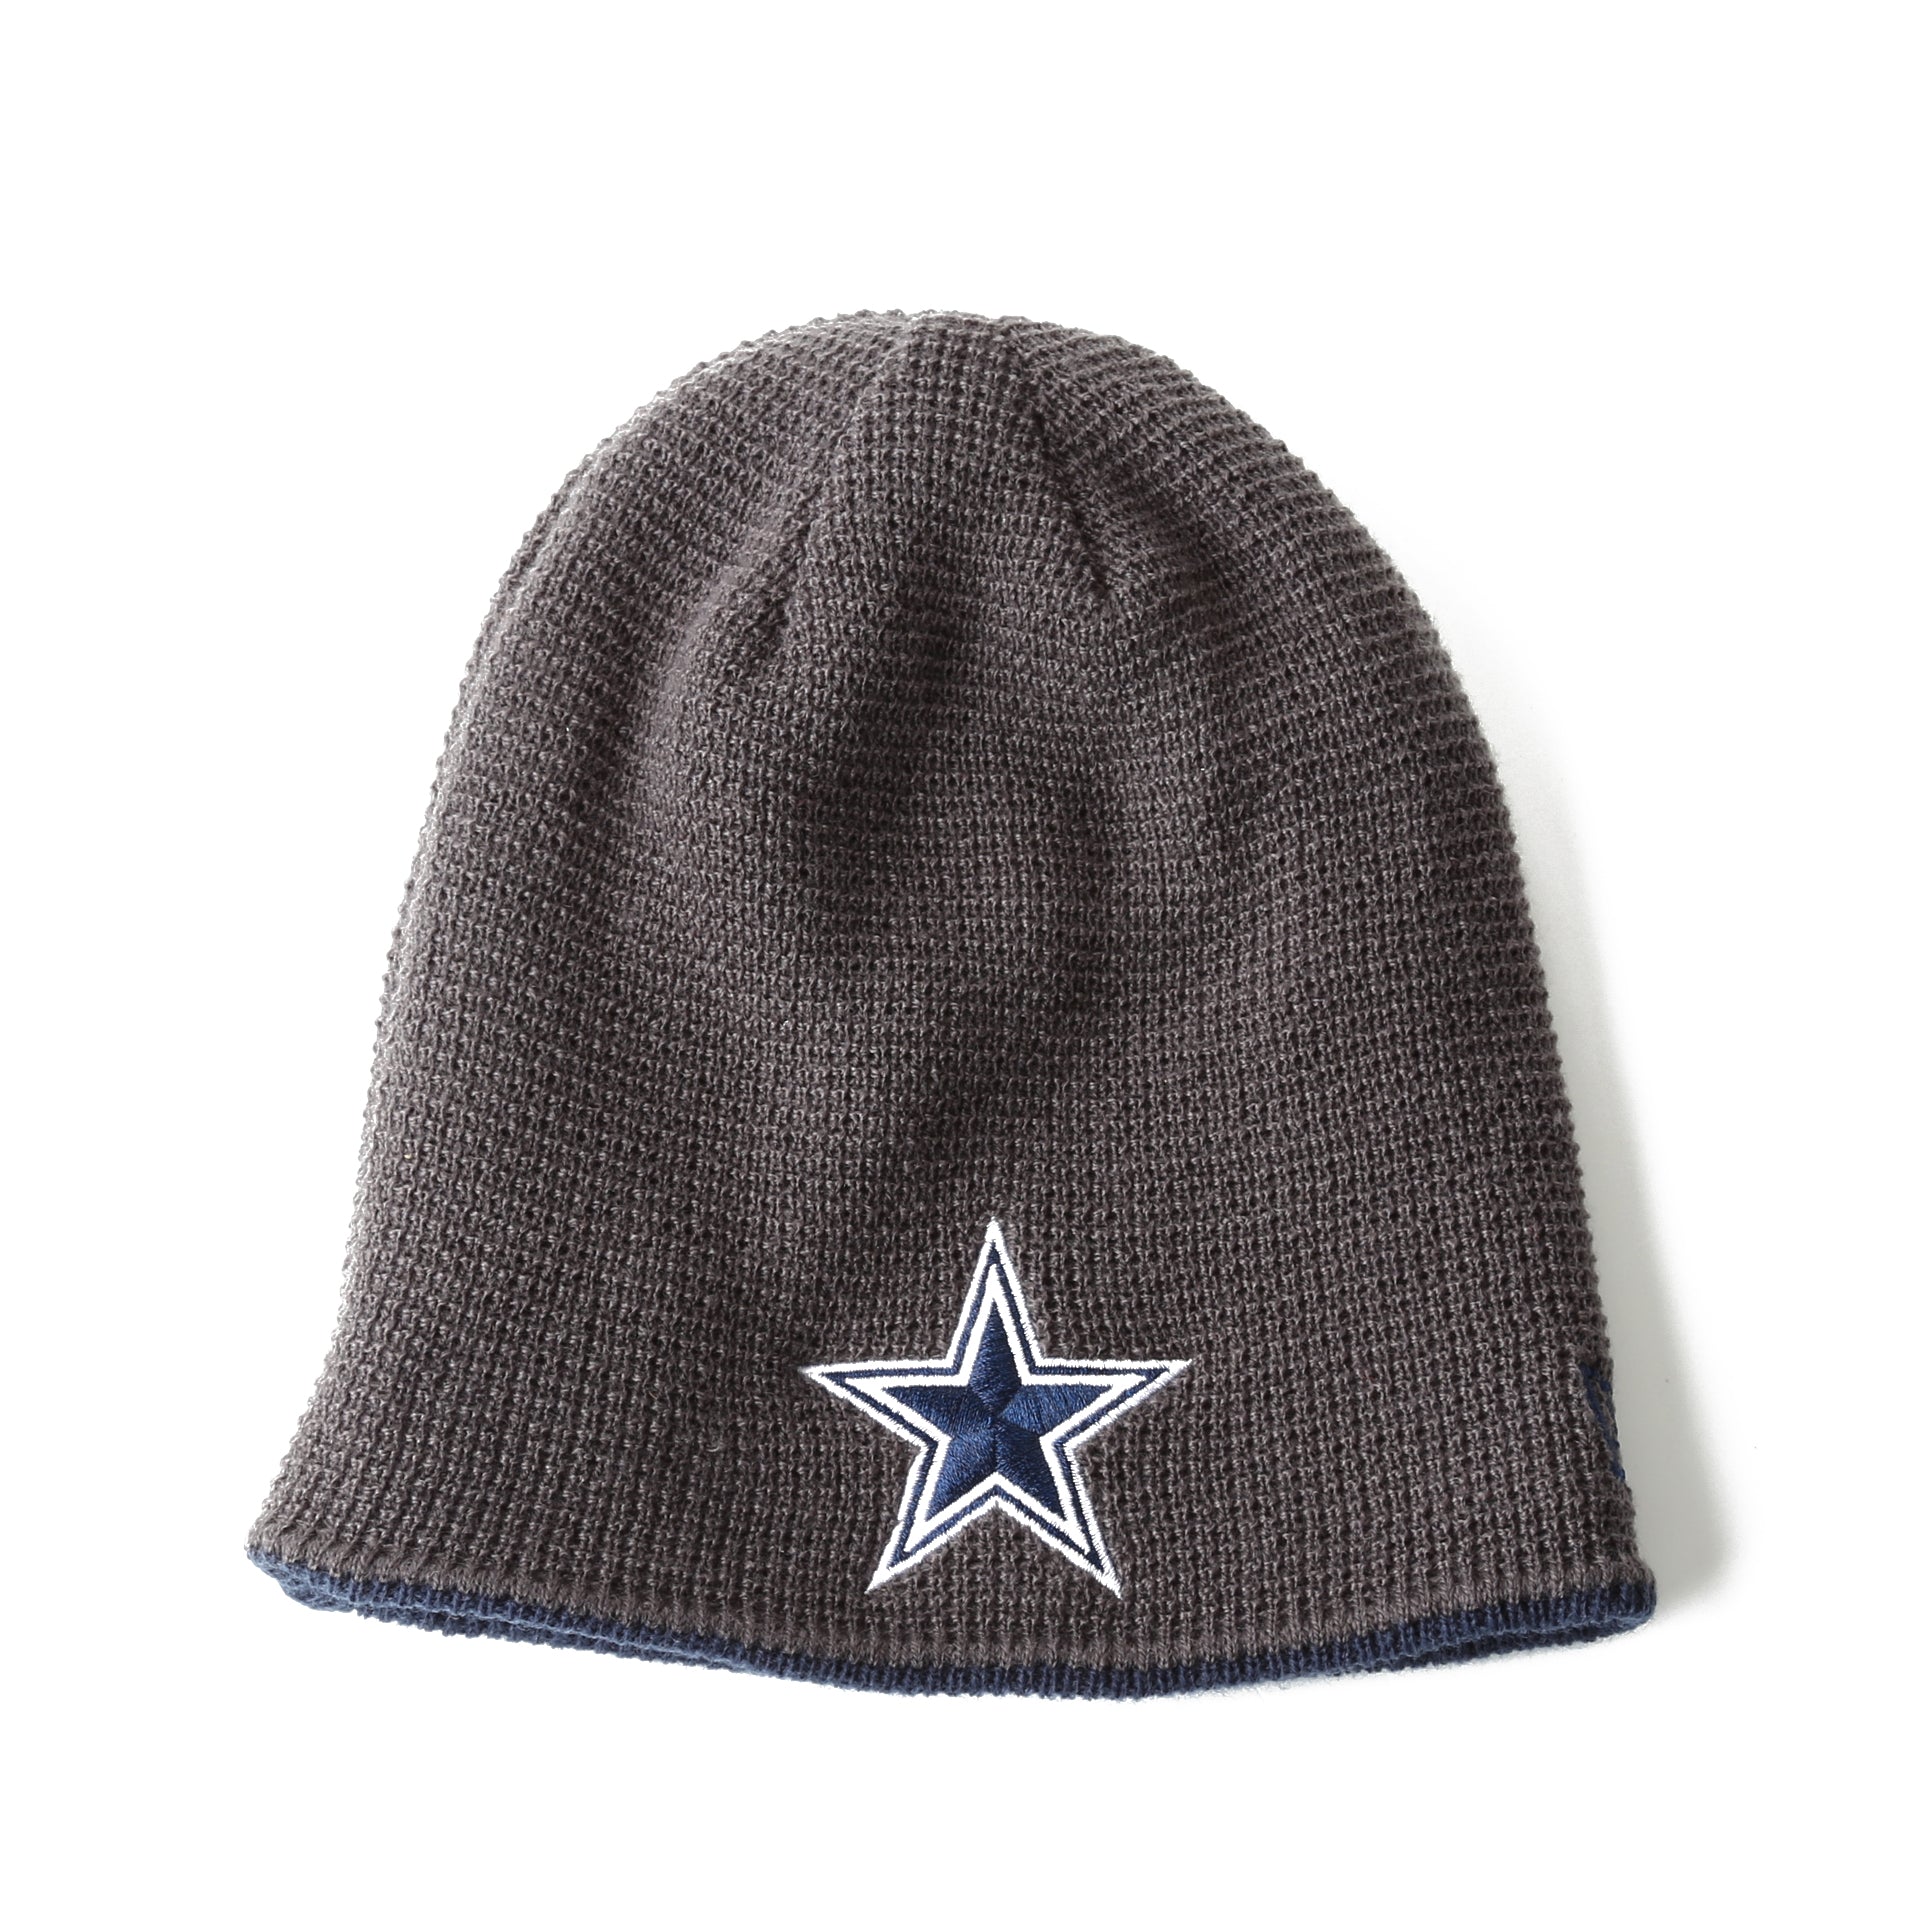 Dallas Cowboys Beanies, Cowboys Knit Hat, Beanie